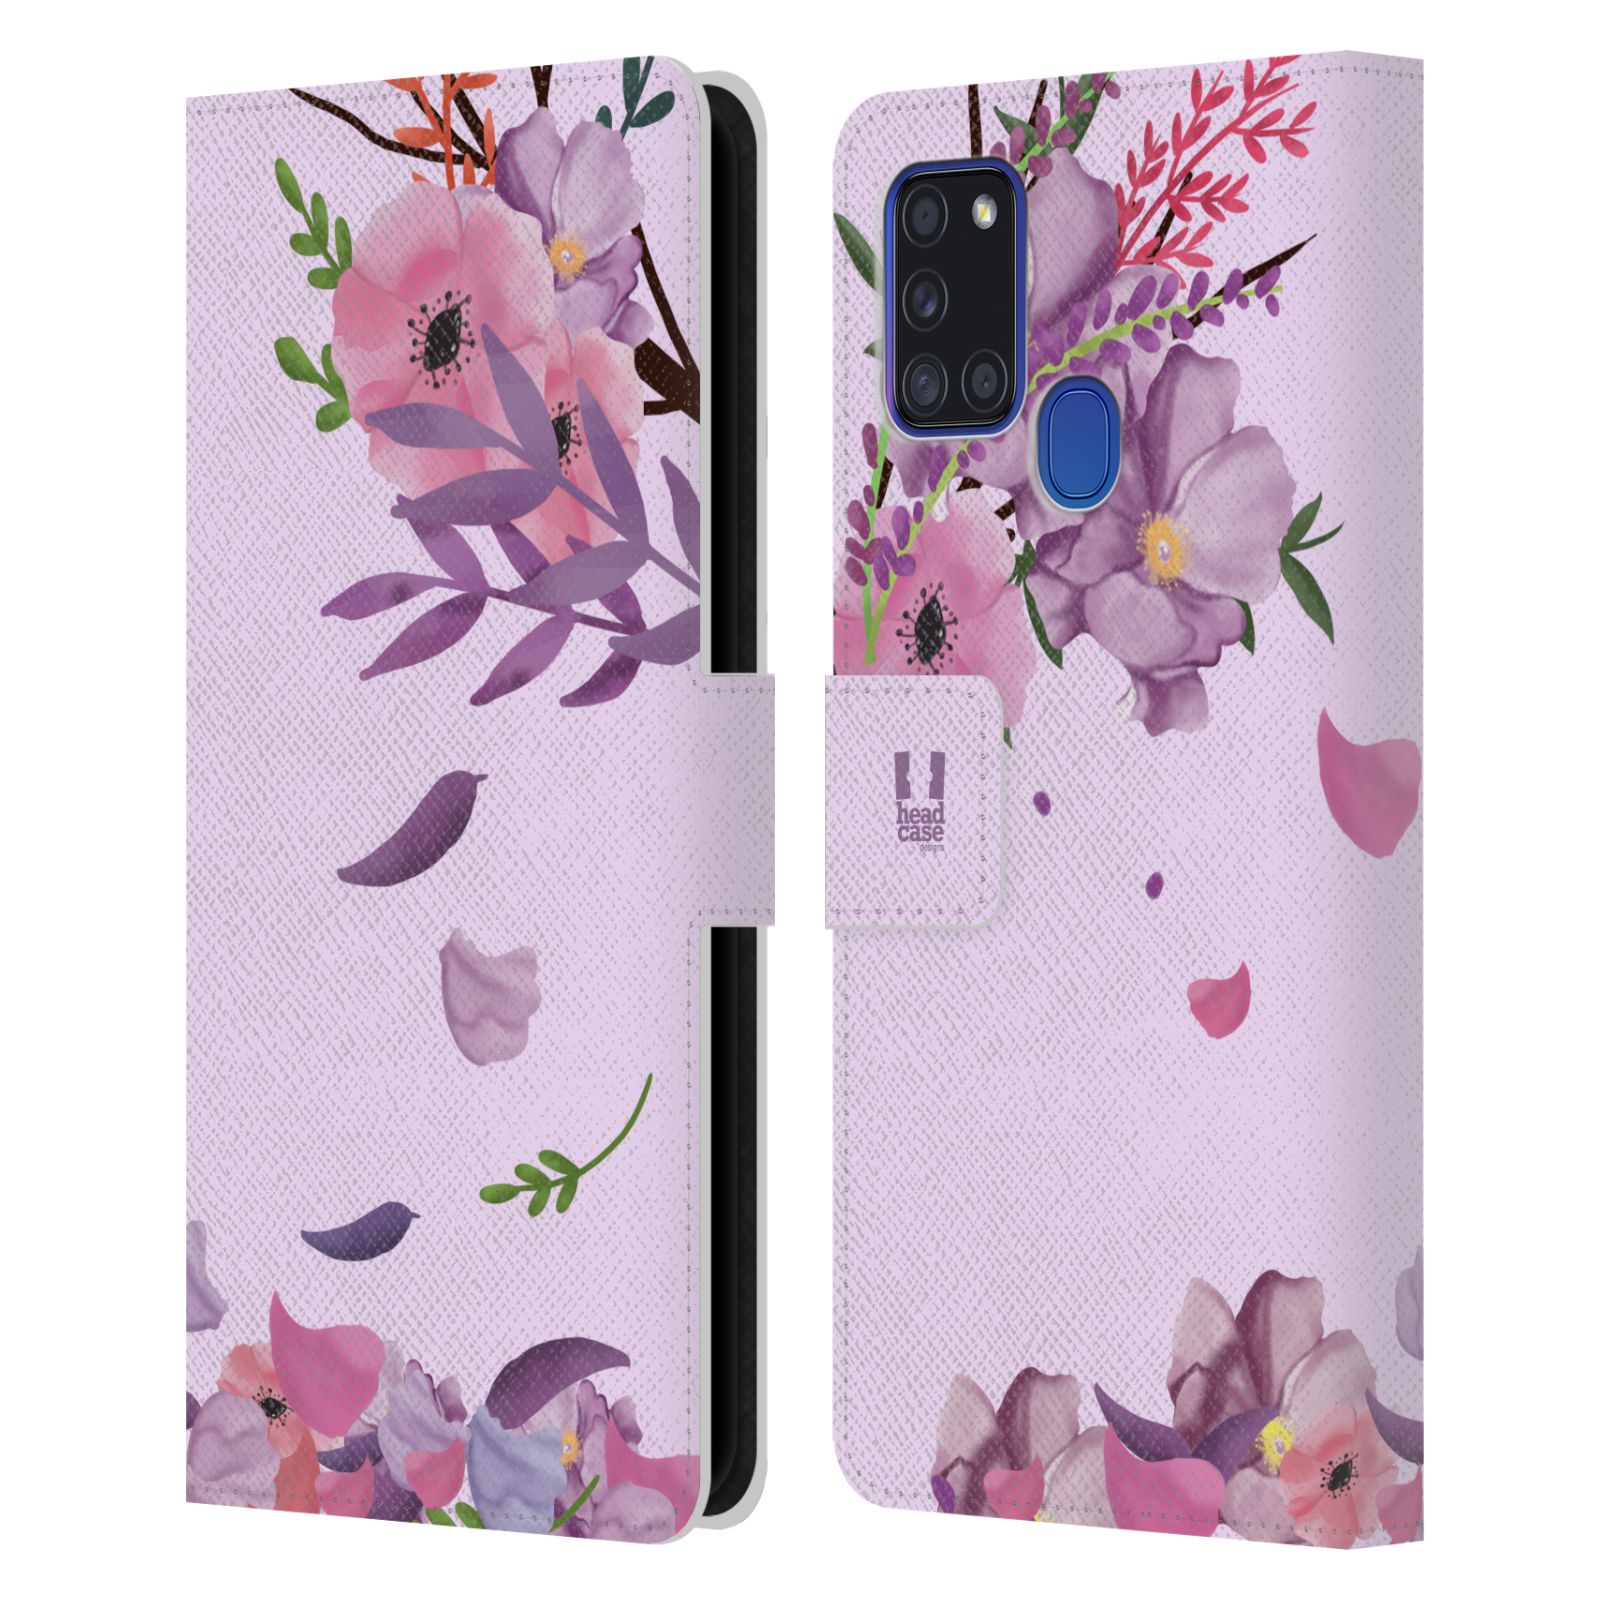 Pouzdro na mobil Samsung Galaxy A21S - HEAD CASE - Rozkvetlé růže a listy růžová